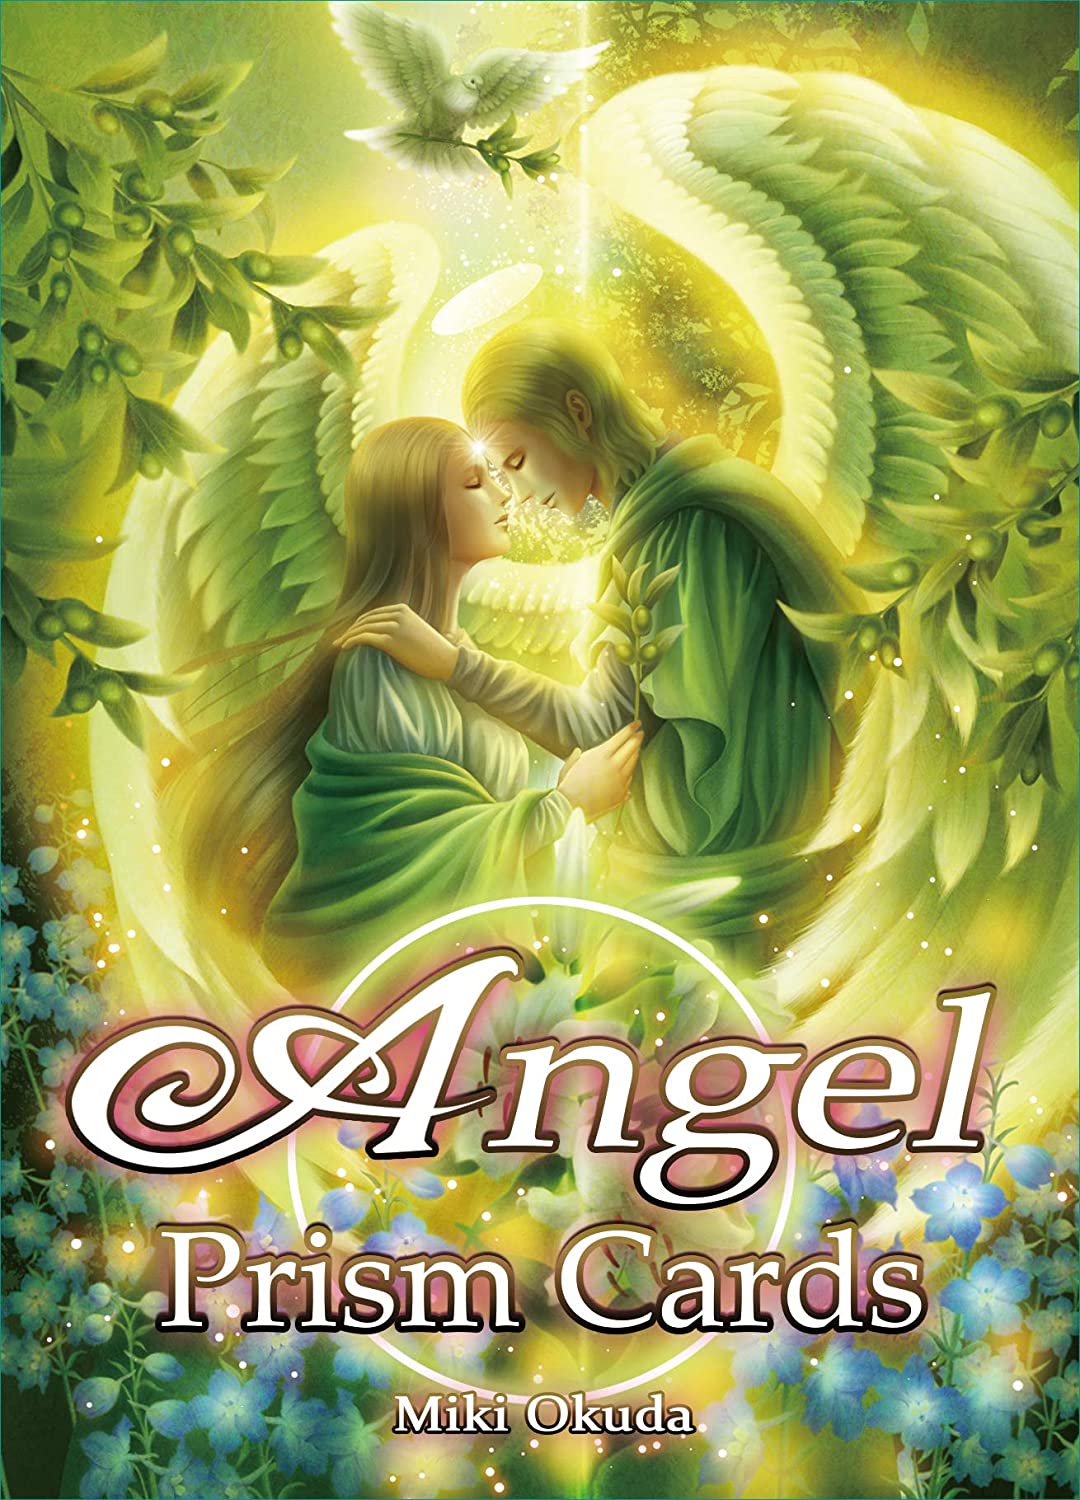 稜鏡天使卡 新版 (Angel prism card)